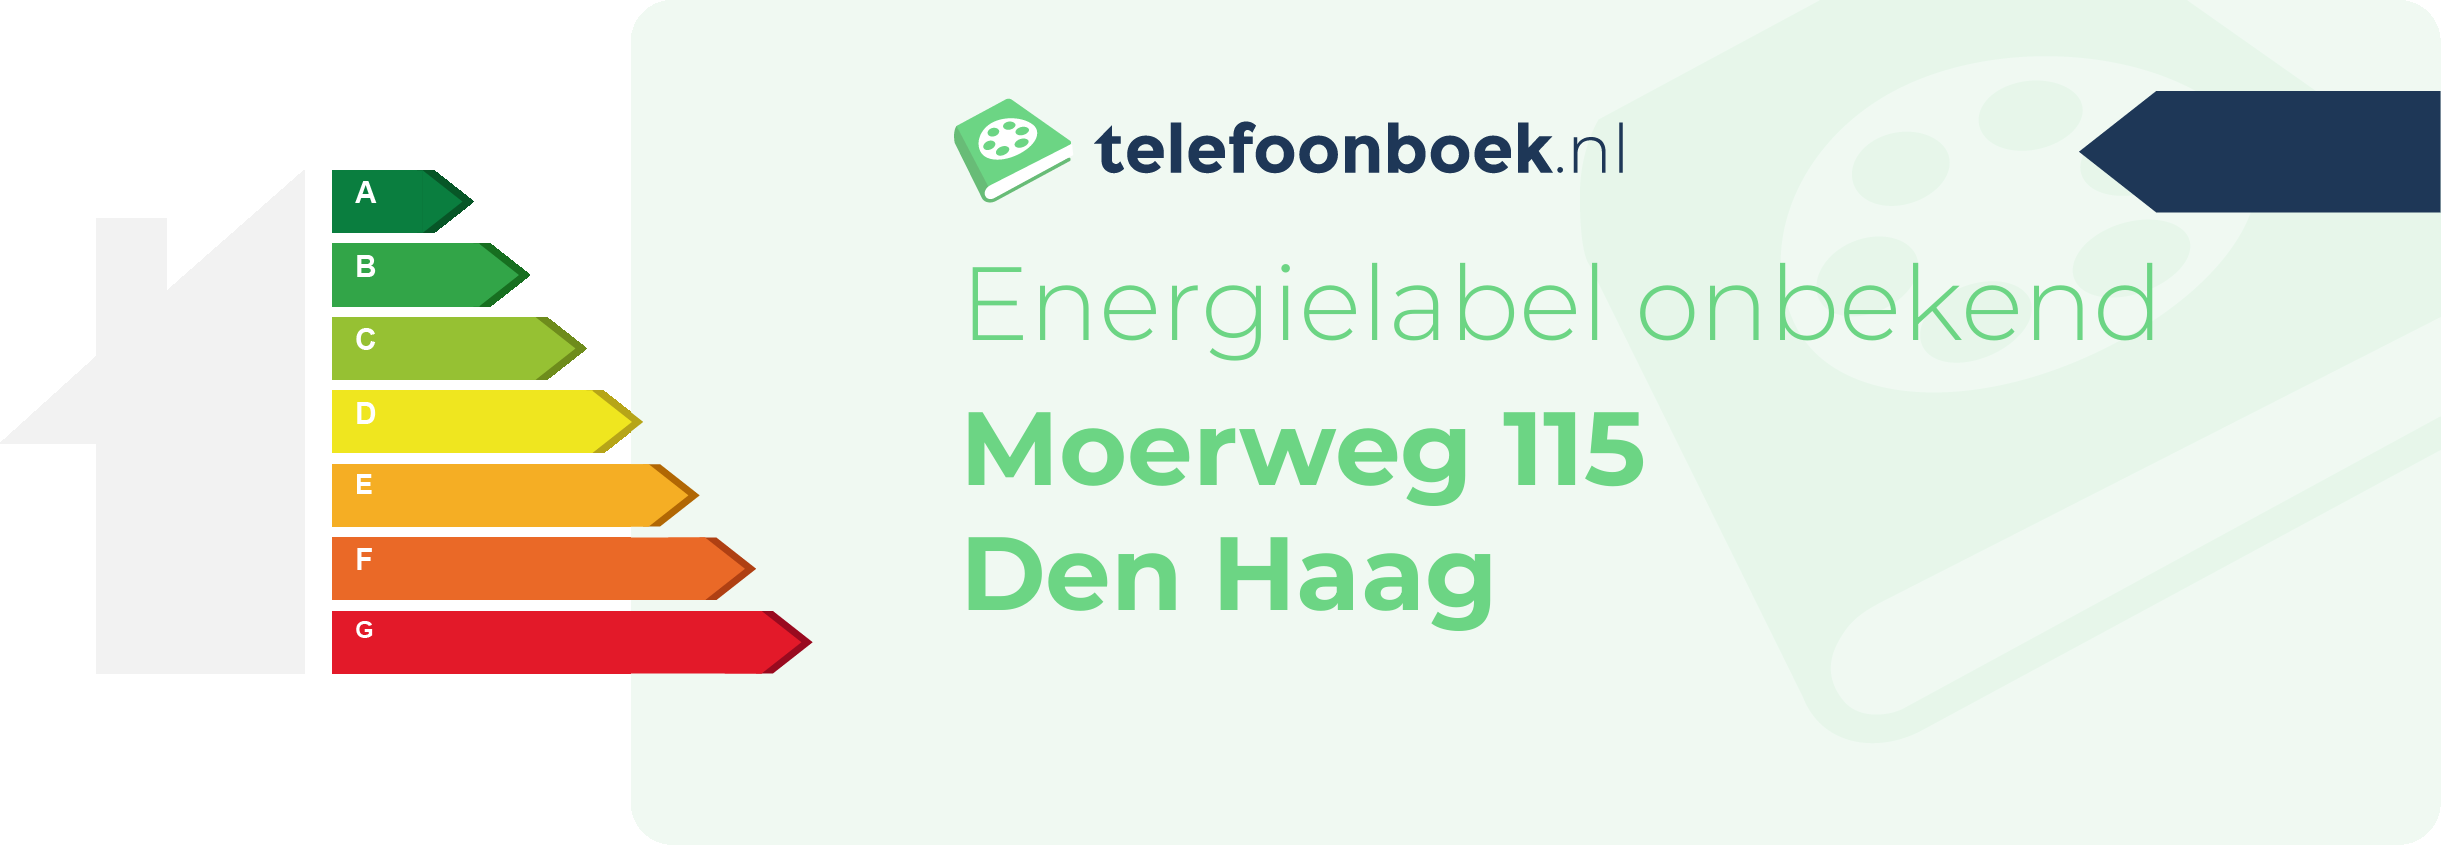 Energielabel Moerweg 115 Den Haag